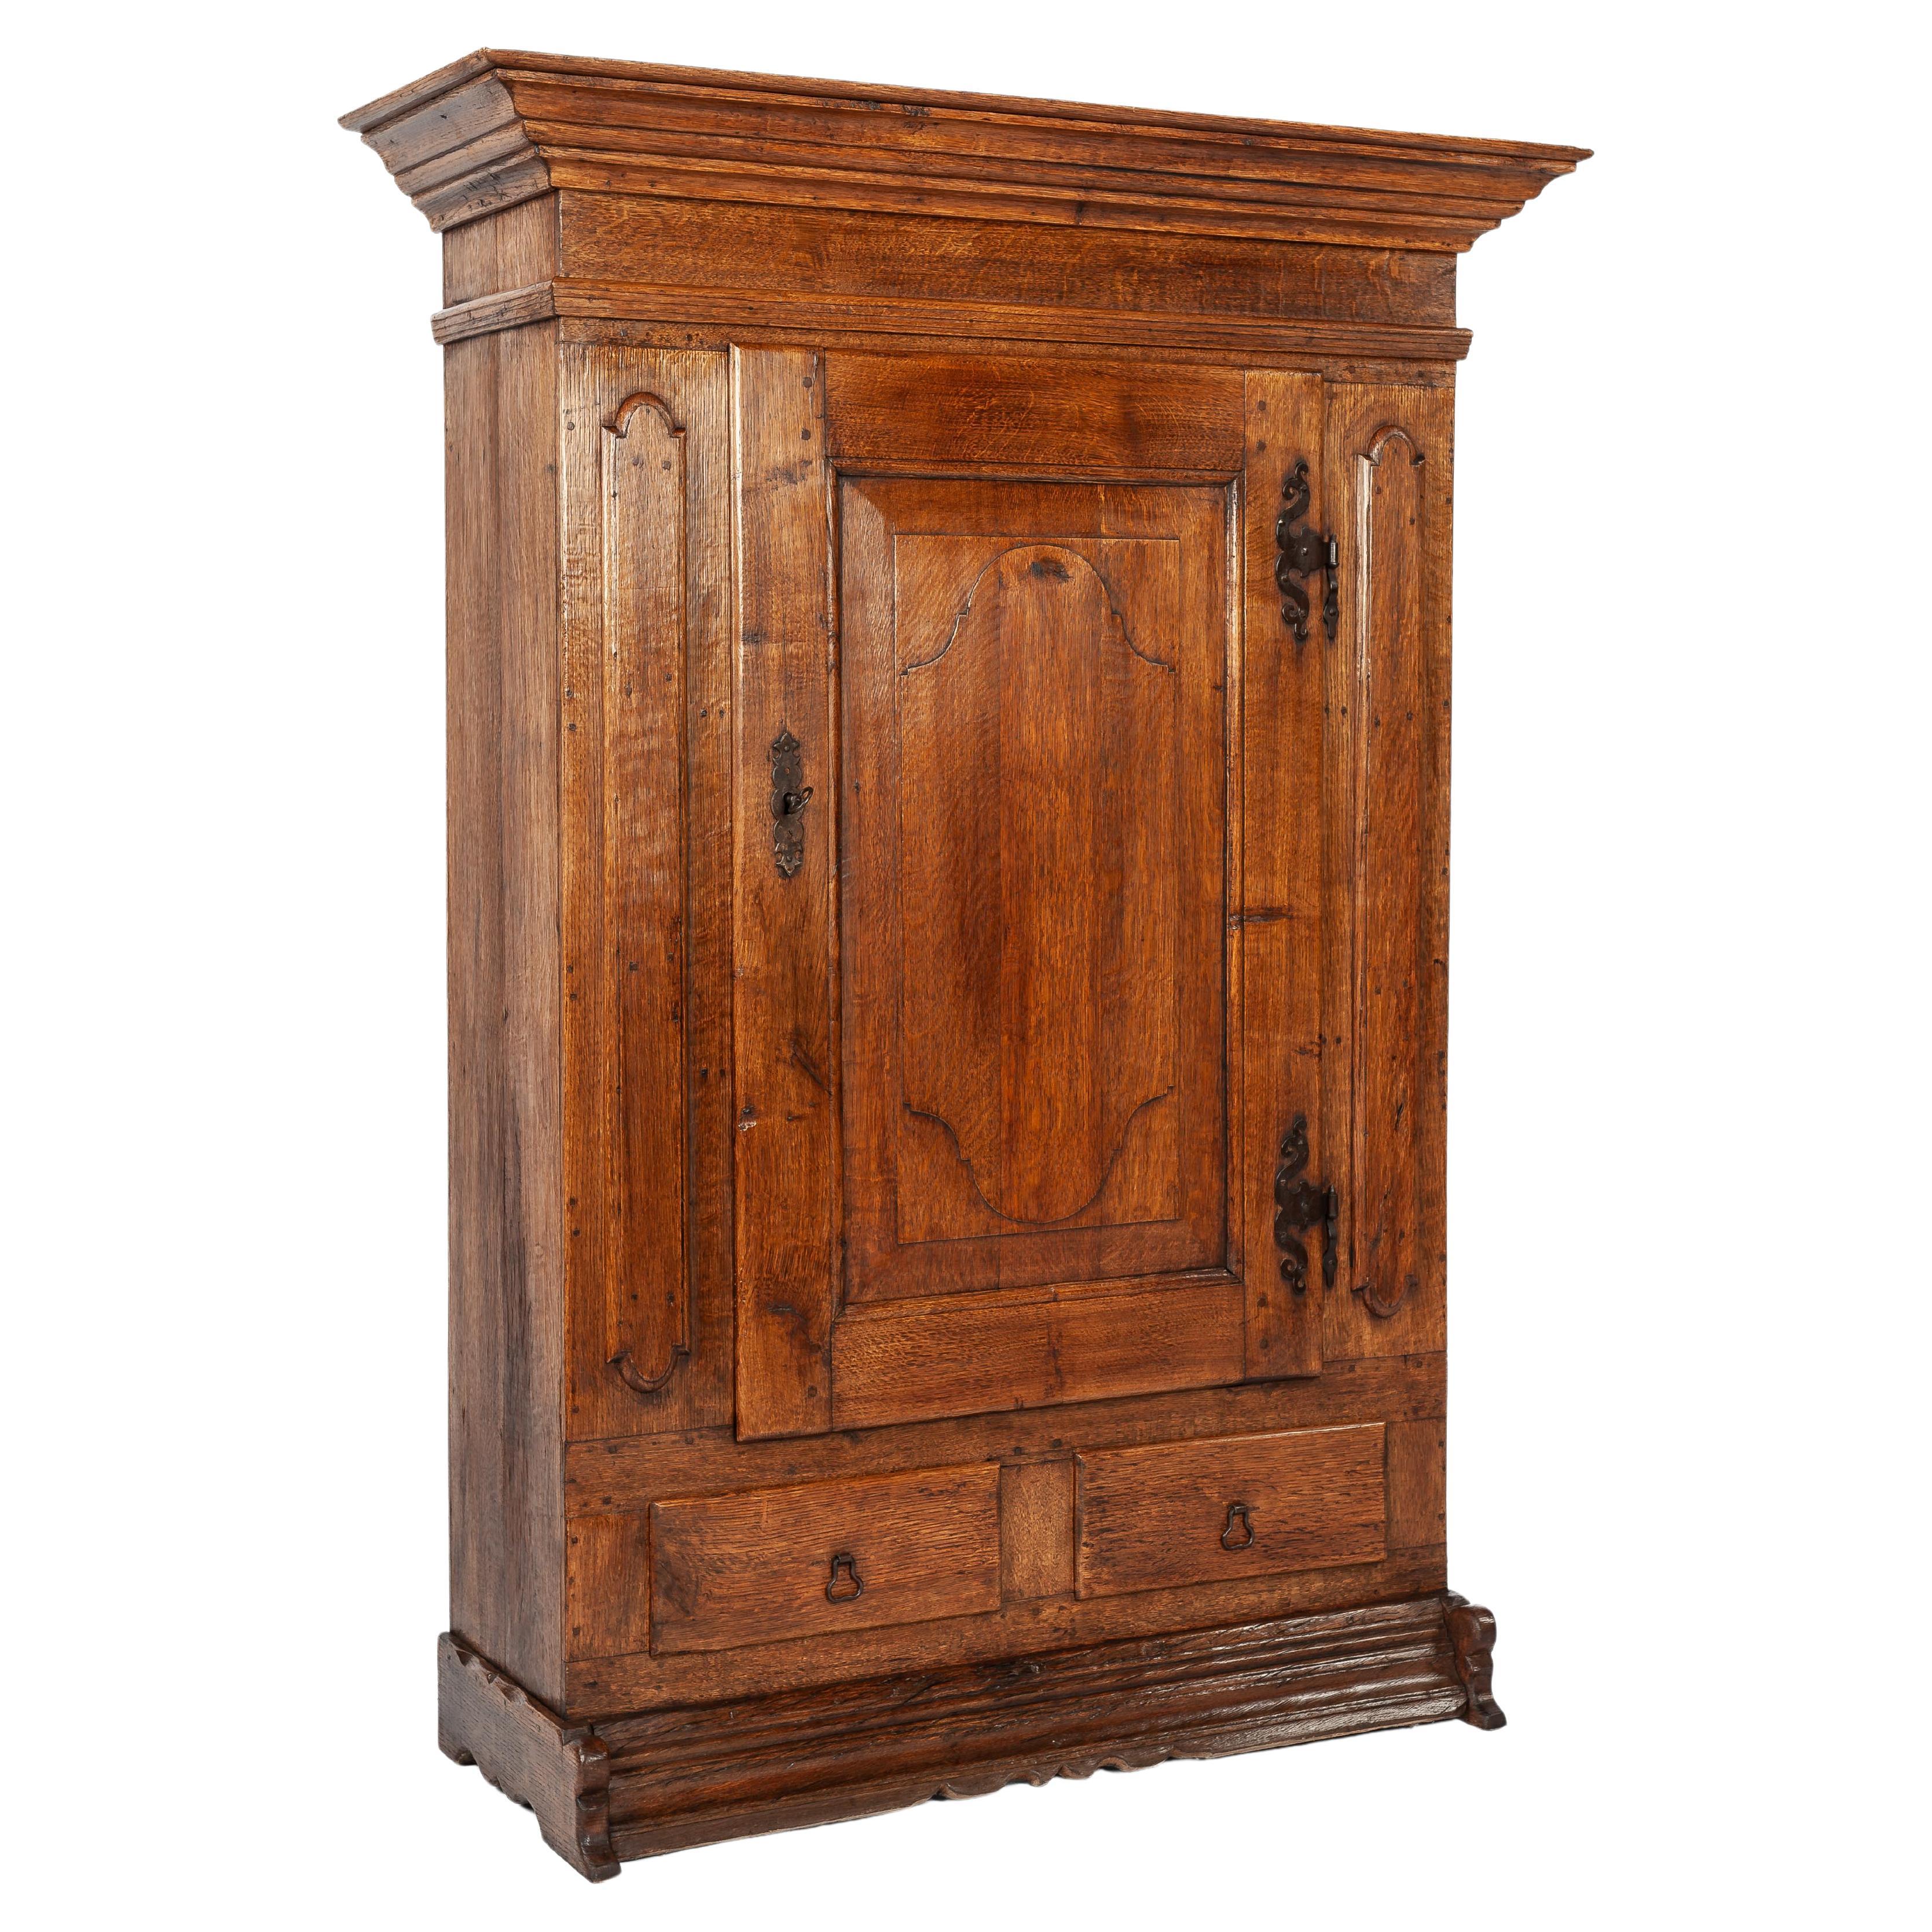  Antique German warm honey color oak single door cabinet circa 1900